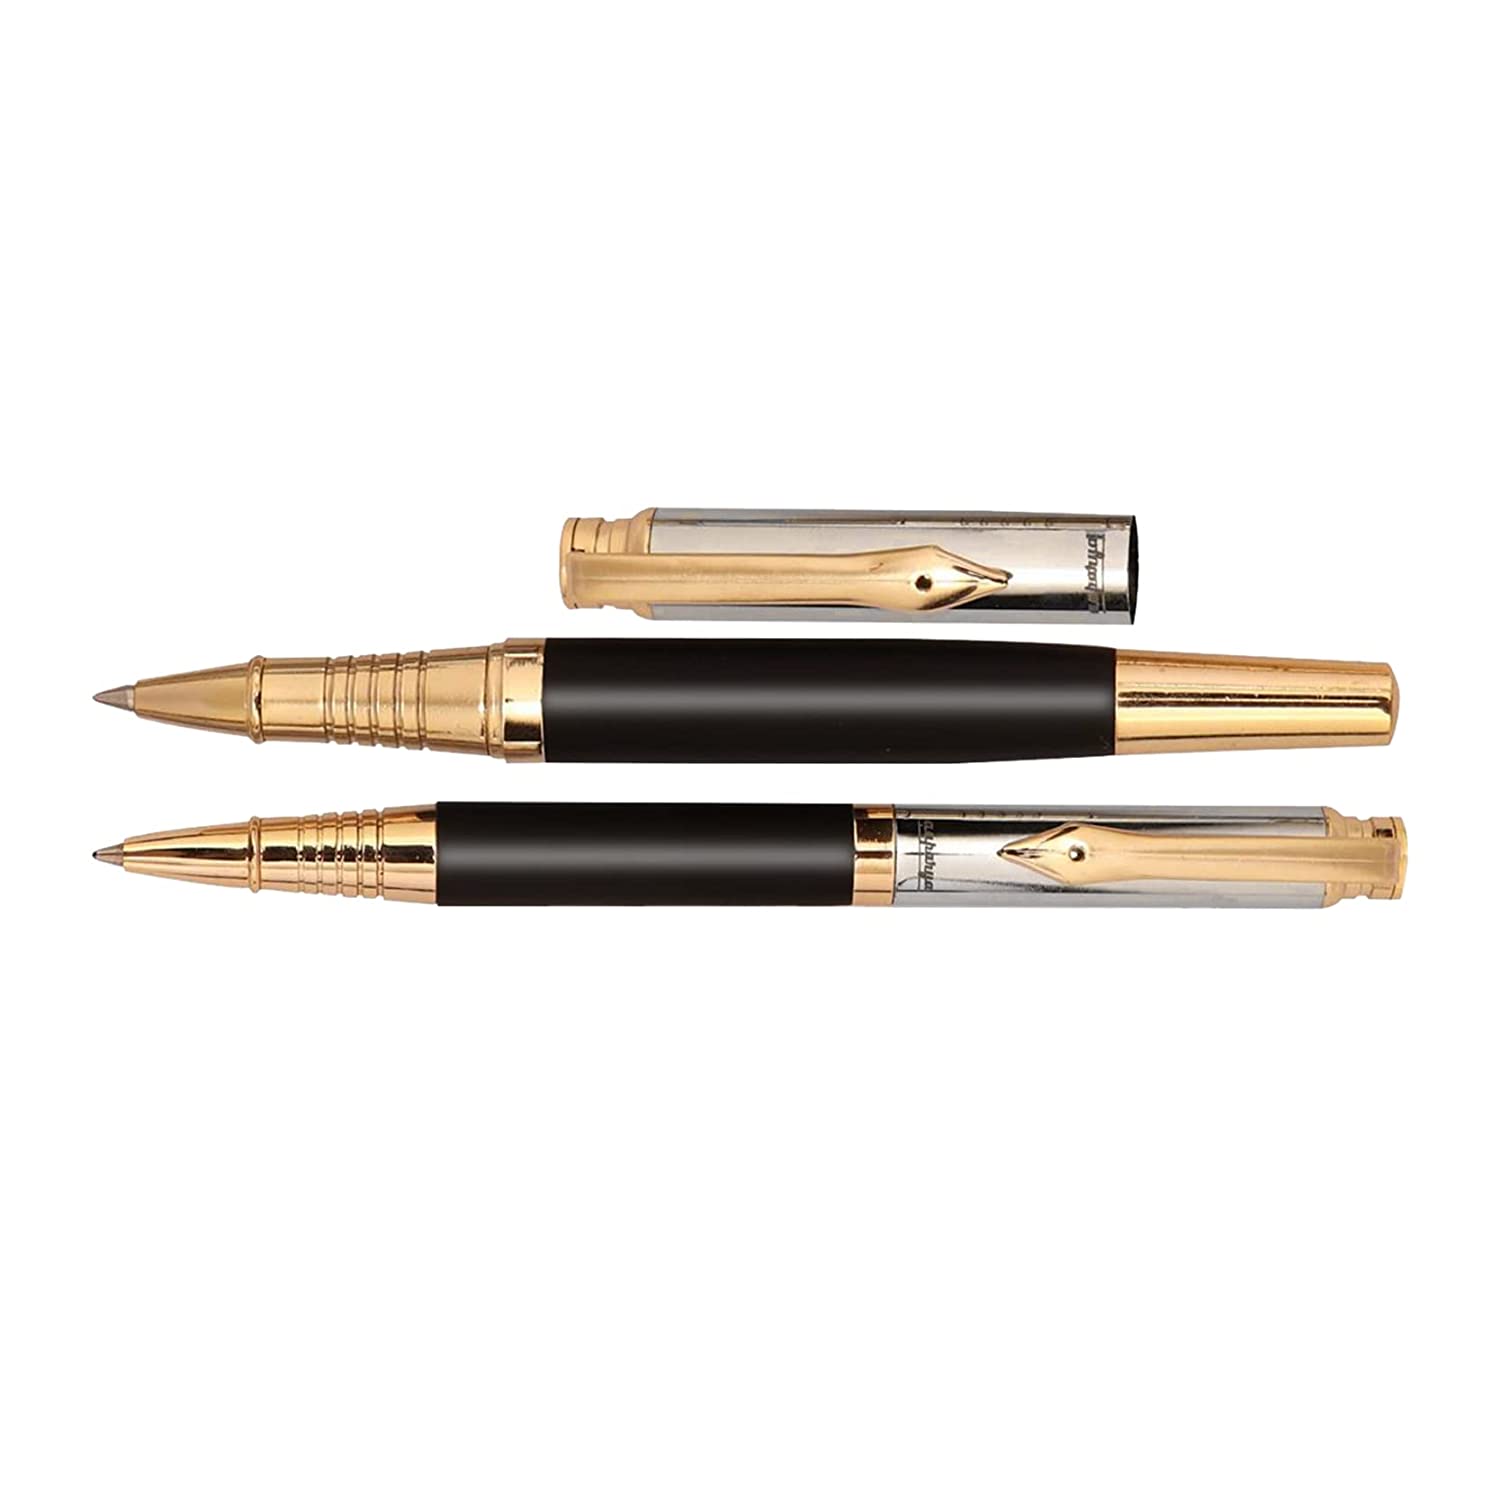 Aaparya Premium Pair of Ball Pen & Roller Pen, Qutiq Gold & Black Full Brass Slim Body Luxury Pen for gift with Genuine Leather Cover